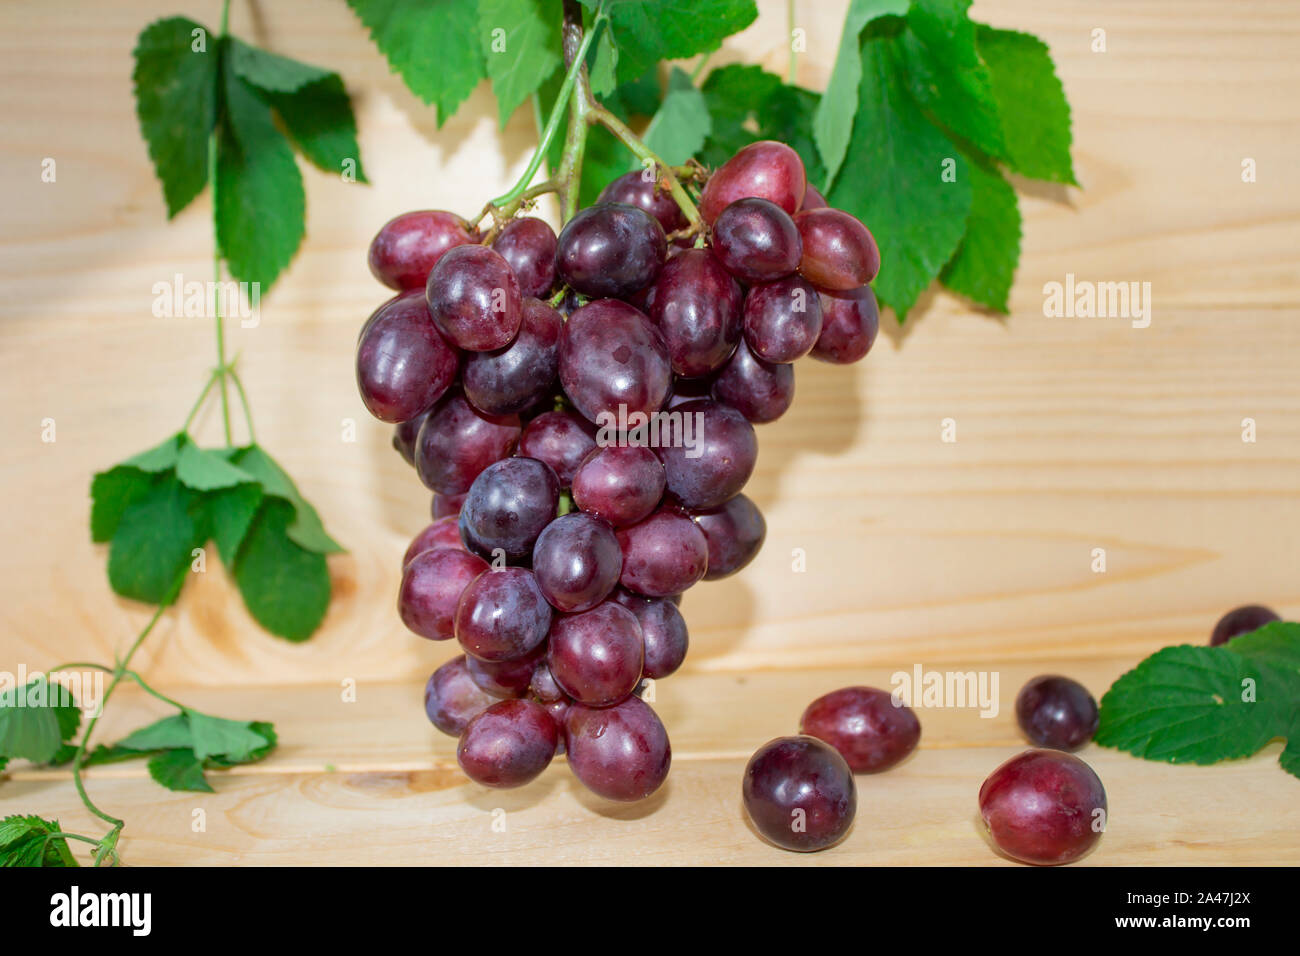 Blumensträuße frische reife rote Trauben auf einem hölzernen Hintergrund. Alte Trauben. Rote Weintrauben. dunklen Trauben, blaue Trauben, Weintrauben, Stockfoto